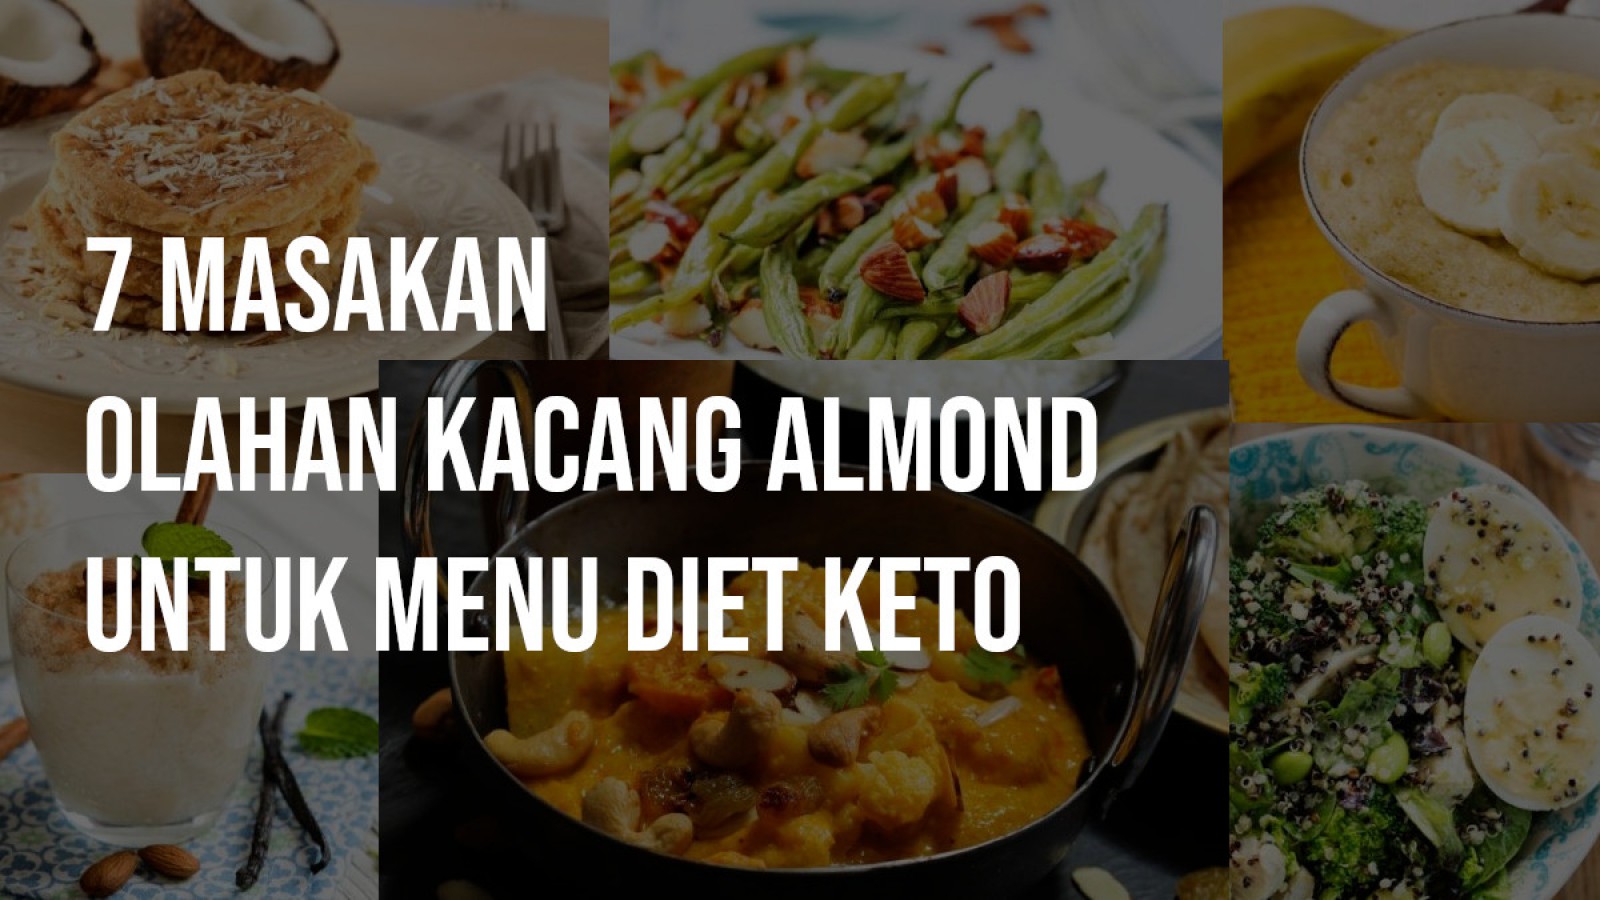 Image 7 Masakan Olahan Kacang Almond untuk Menu Diet Keto